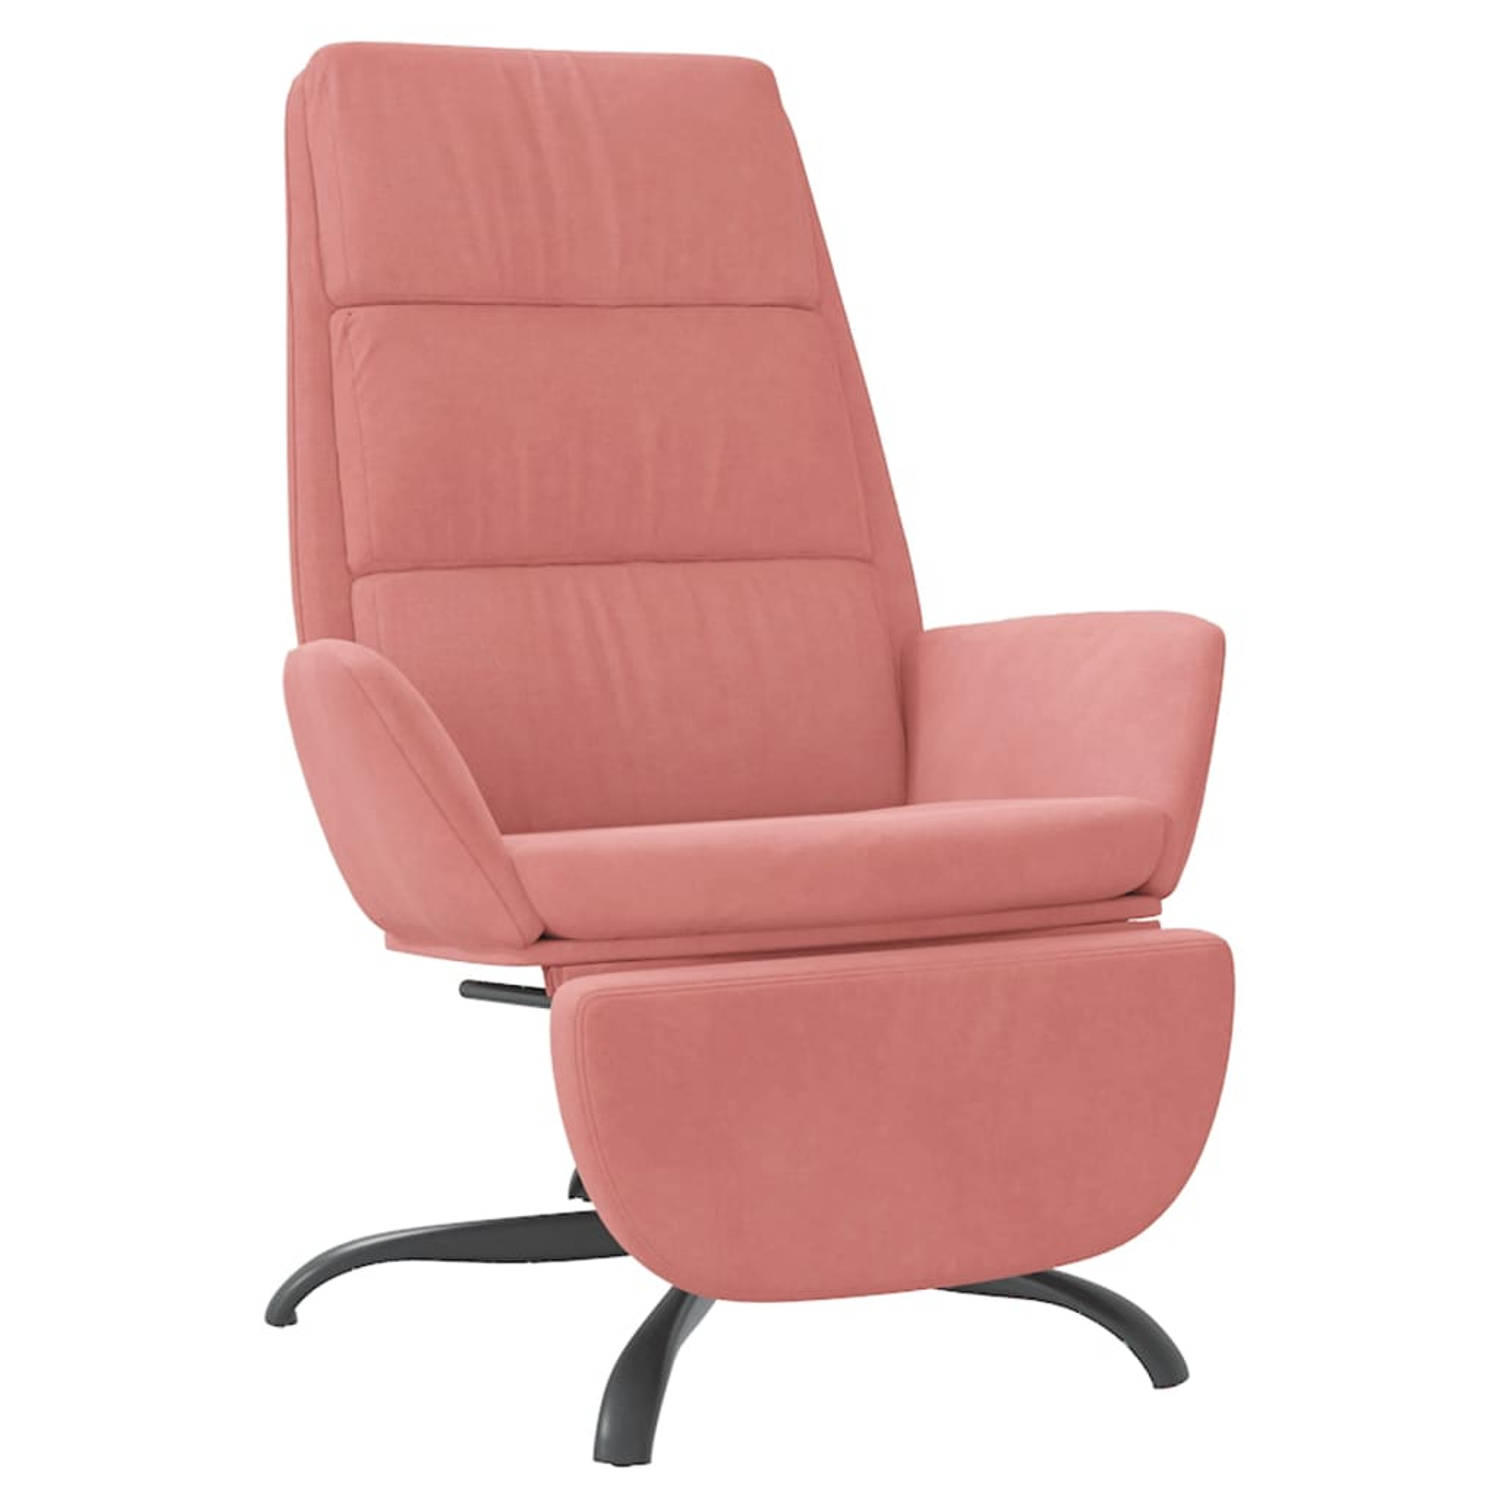 The Living Store Relaxstoel met voetensteun fluweel roze - Fauteuil